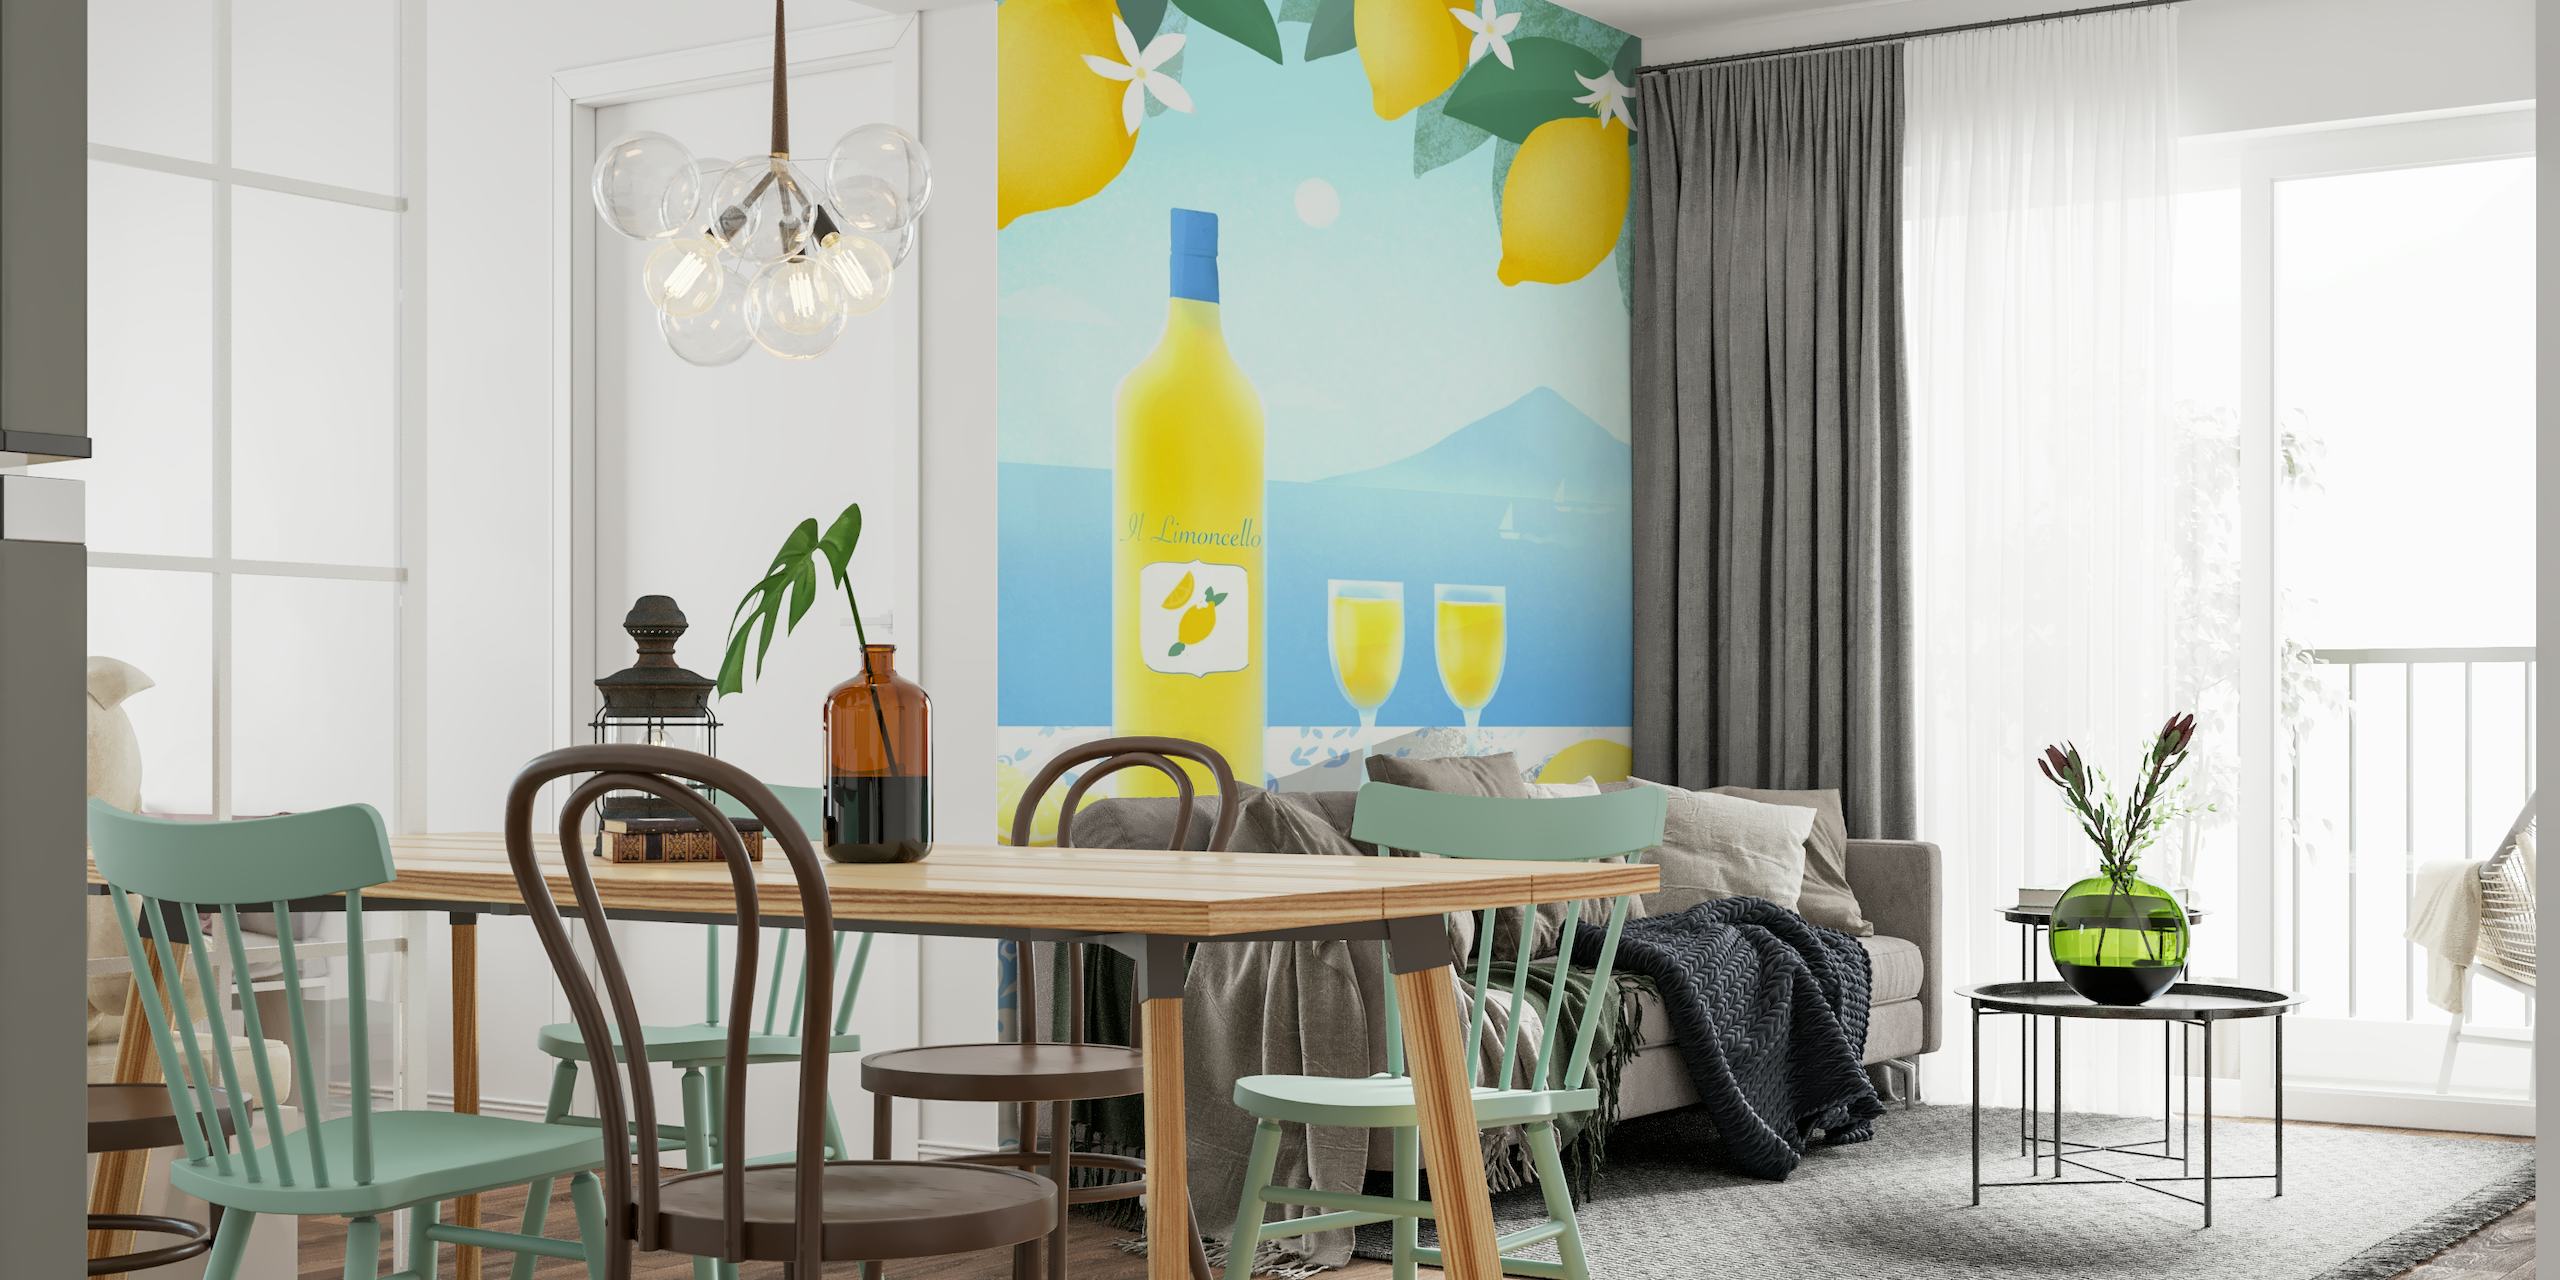 Mural de limoncello con limoneros, botella de limoncello, vasos, vistas al mar y azulejos mediterráneos